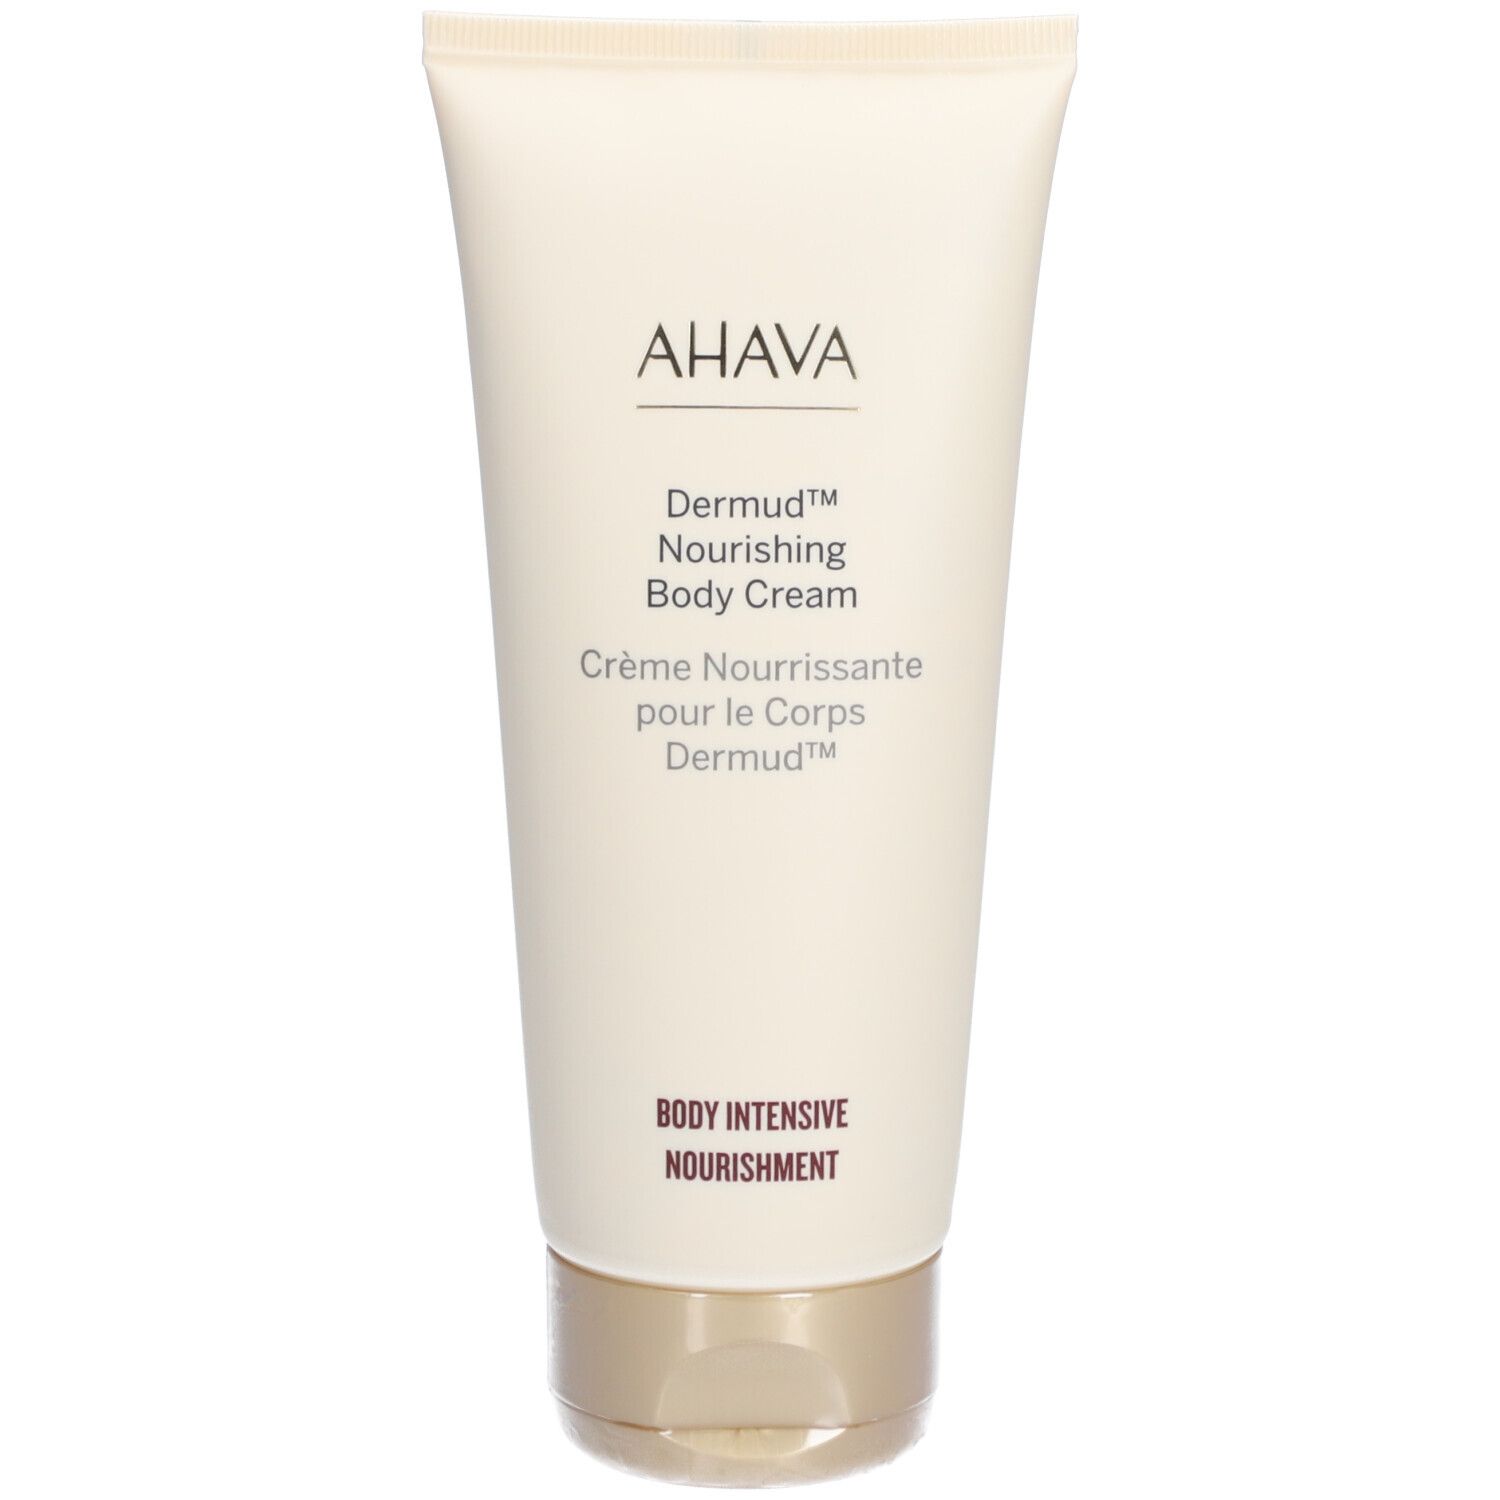 Ahava Leave-On Deadsea MUD Dermud Nourishing Body Cream